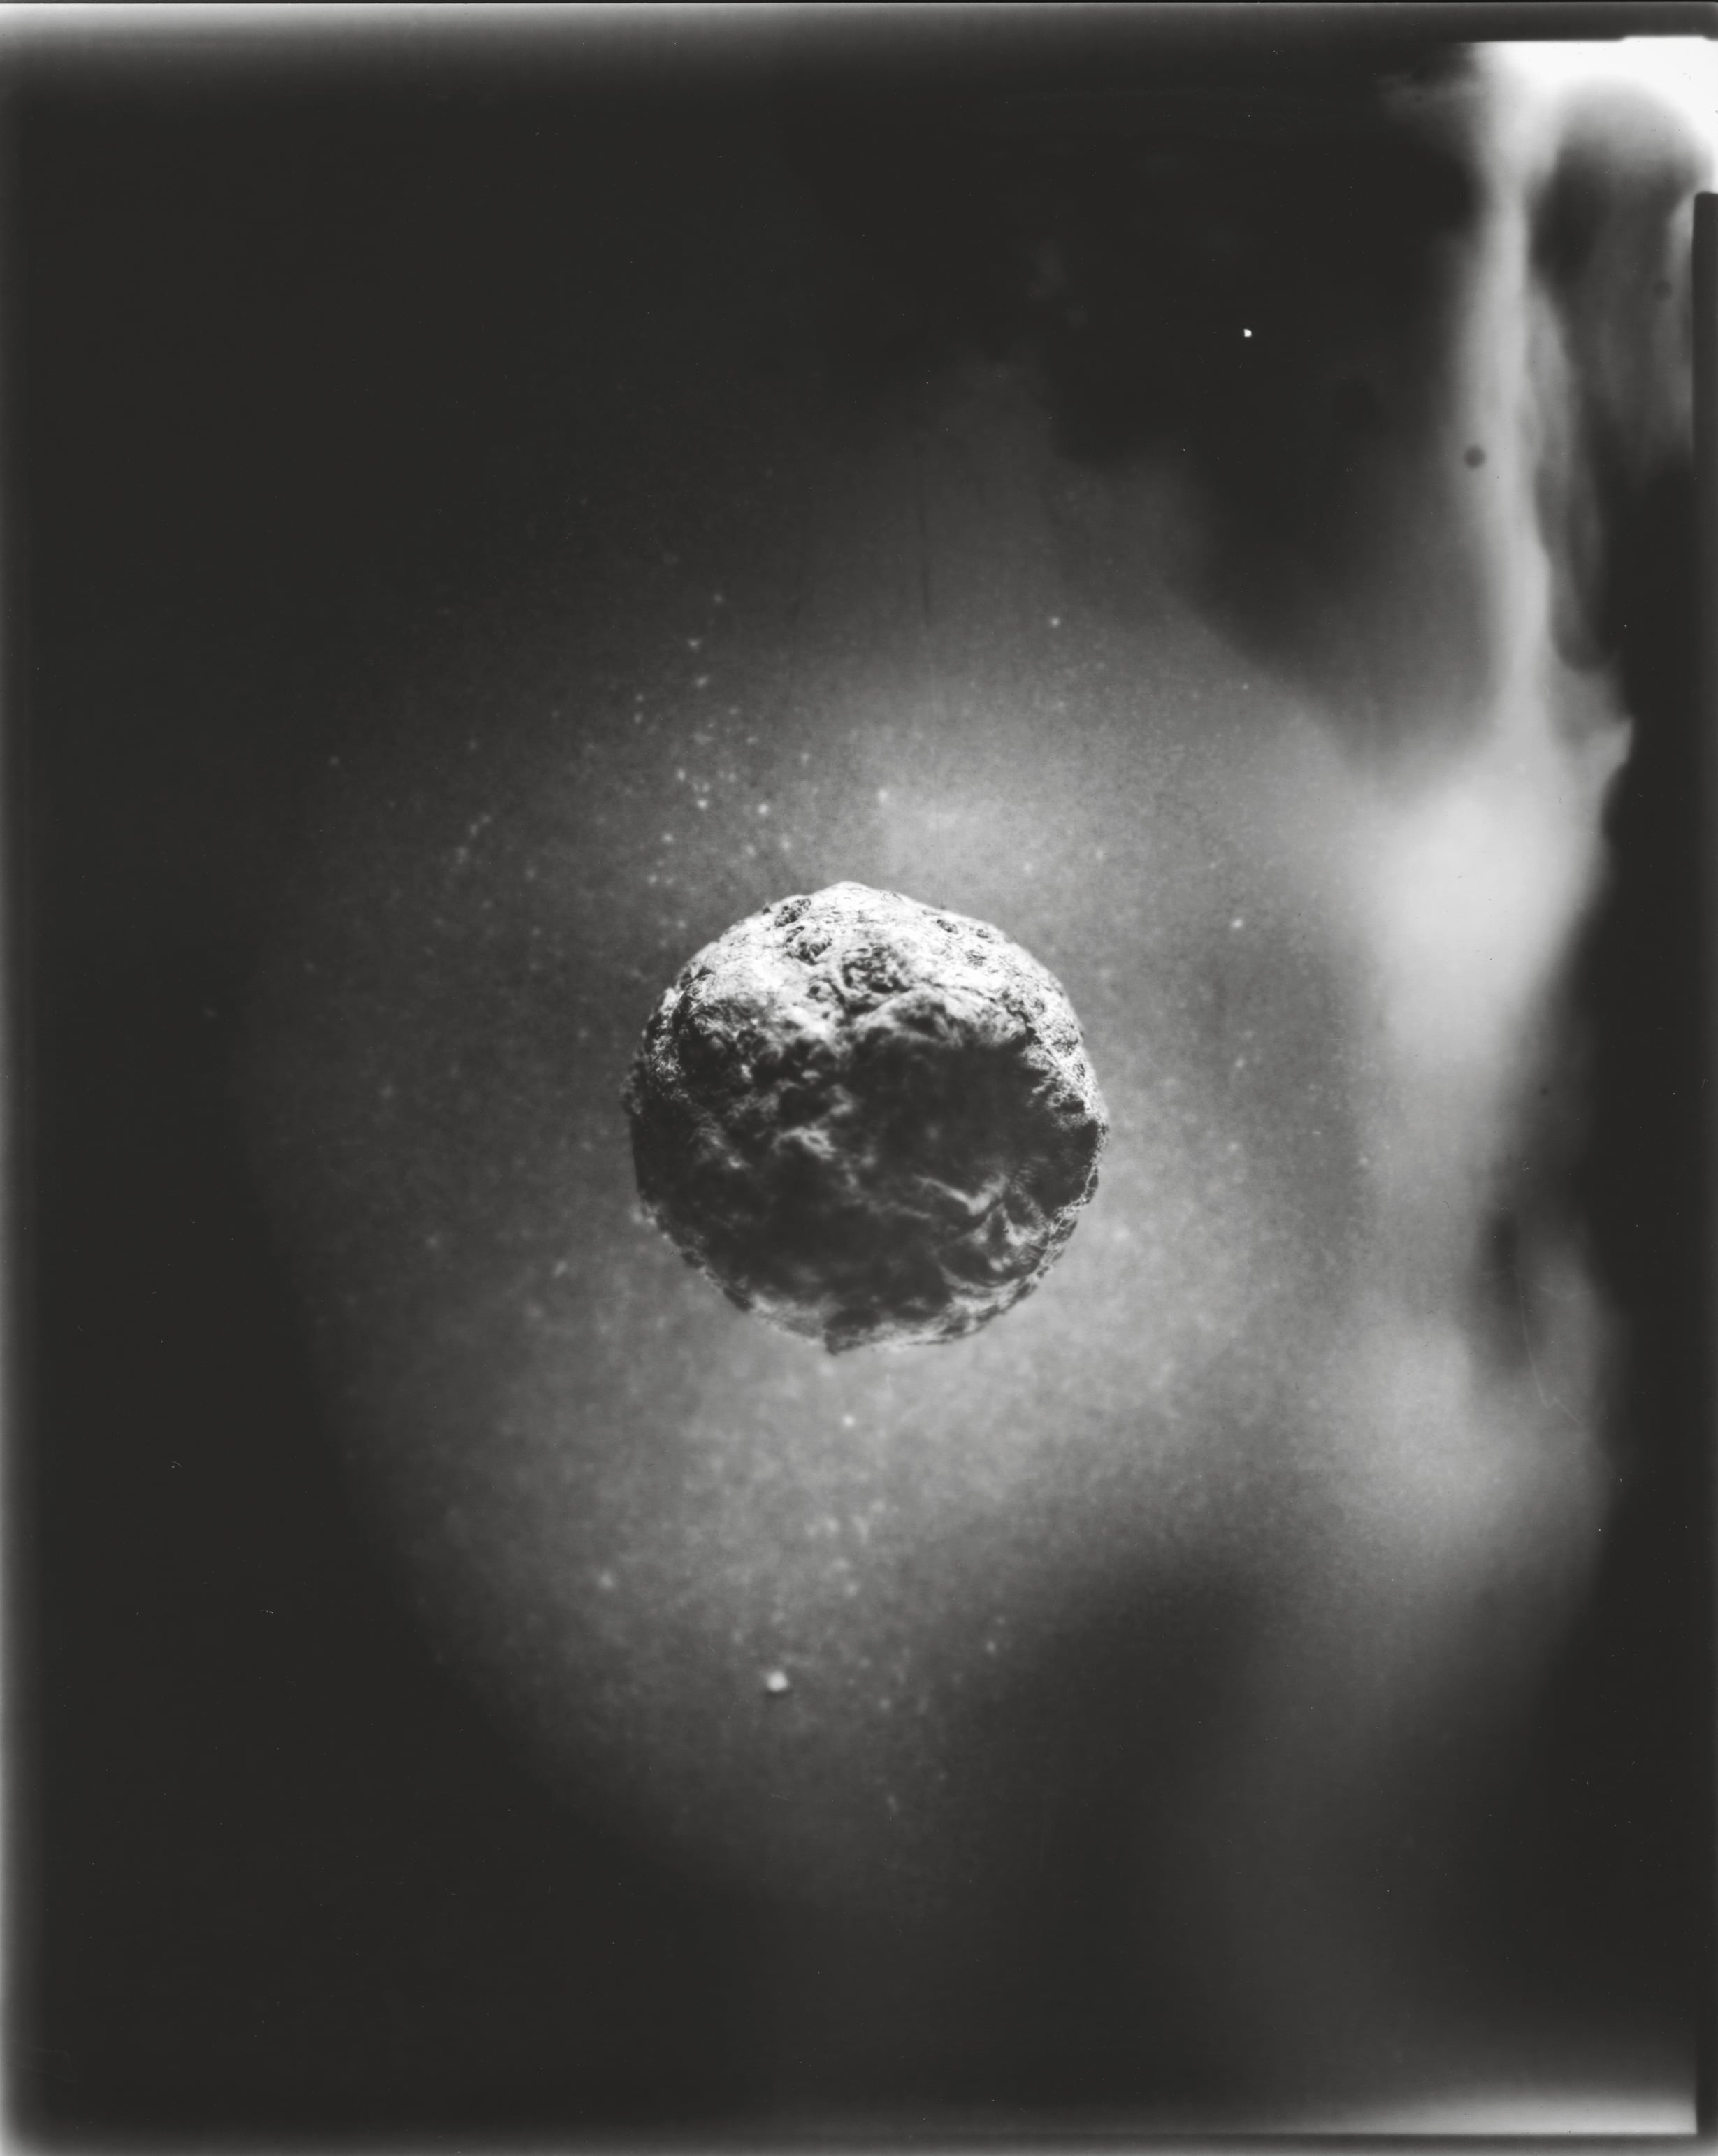 Tine Edel | Komet, 2016 | Belichtung eines 8 x10“ Papiernegativ, 24 x 30 cm analoges Fotopapier von Adox